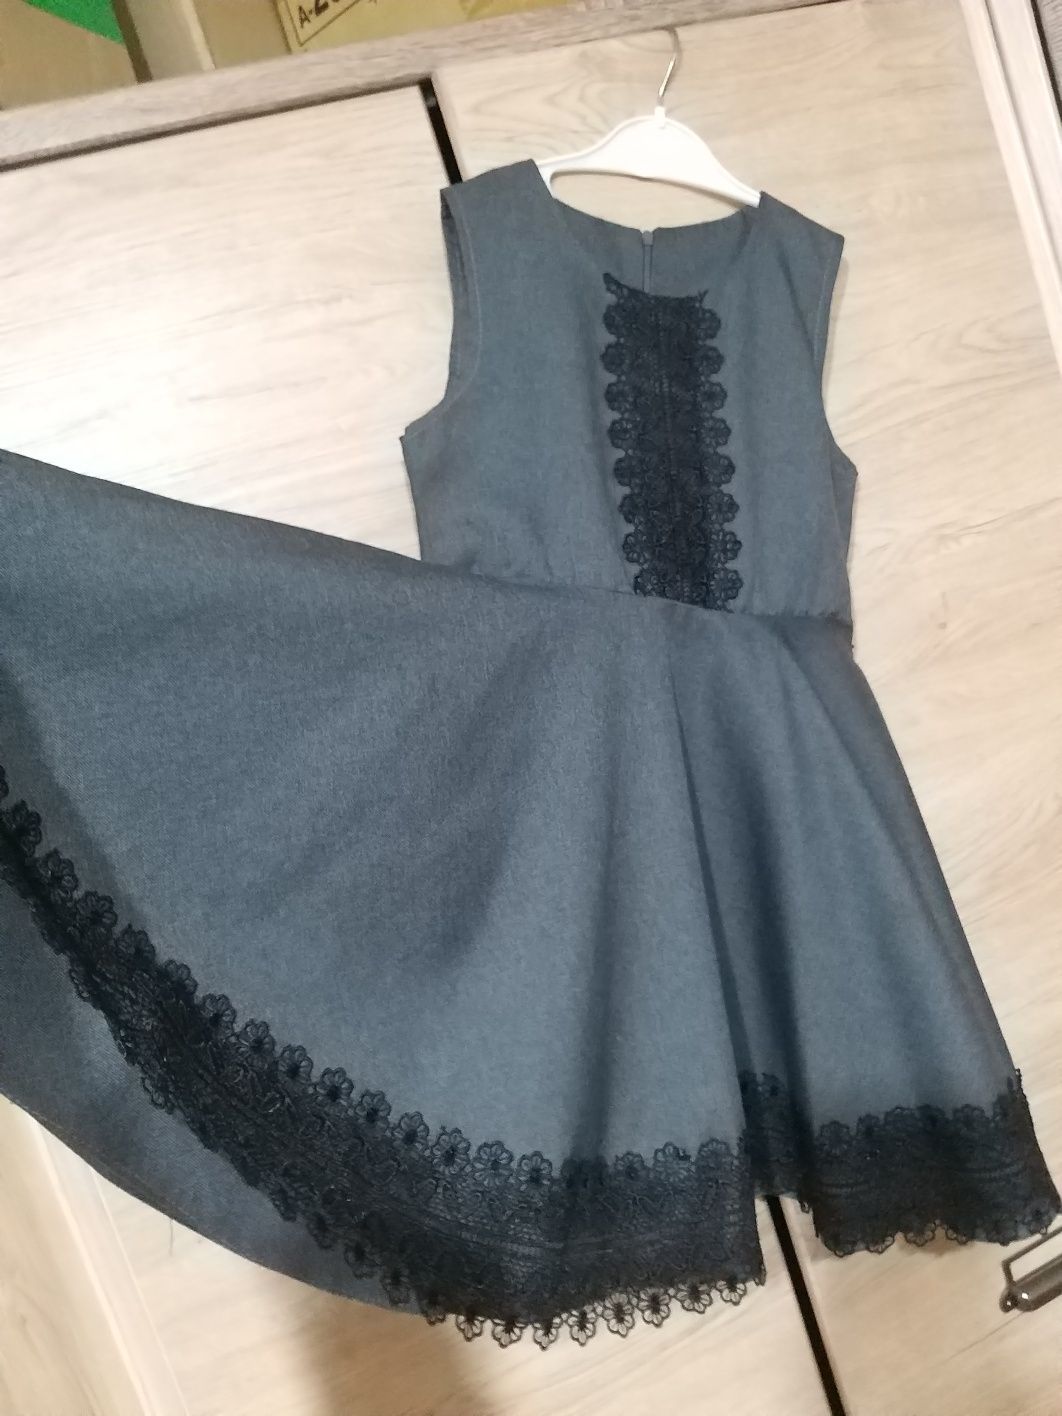 Сарафан платье серого цвета очень красивый для школы можно 5-9 лет